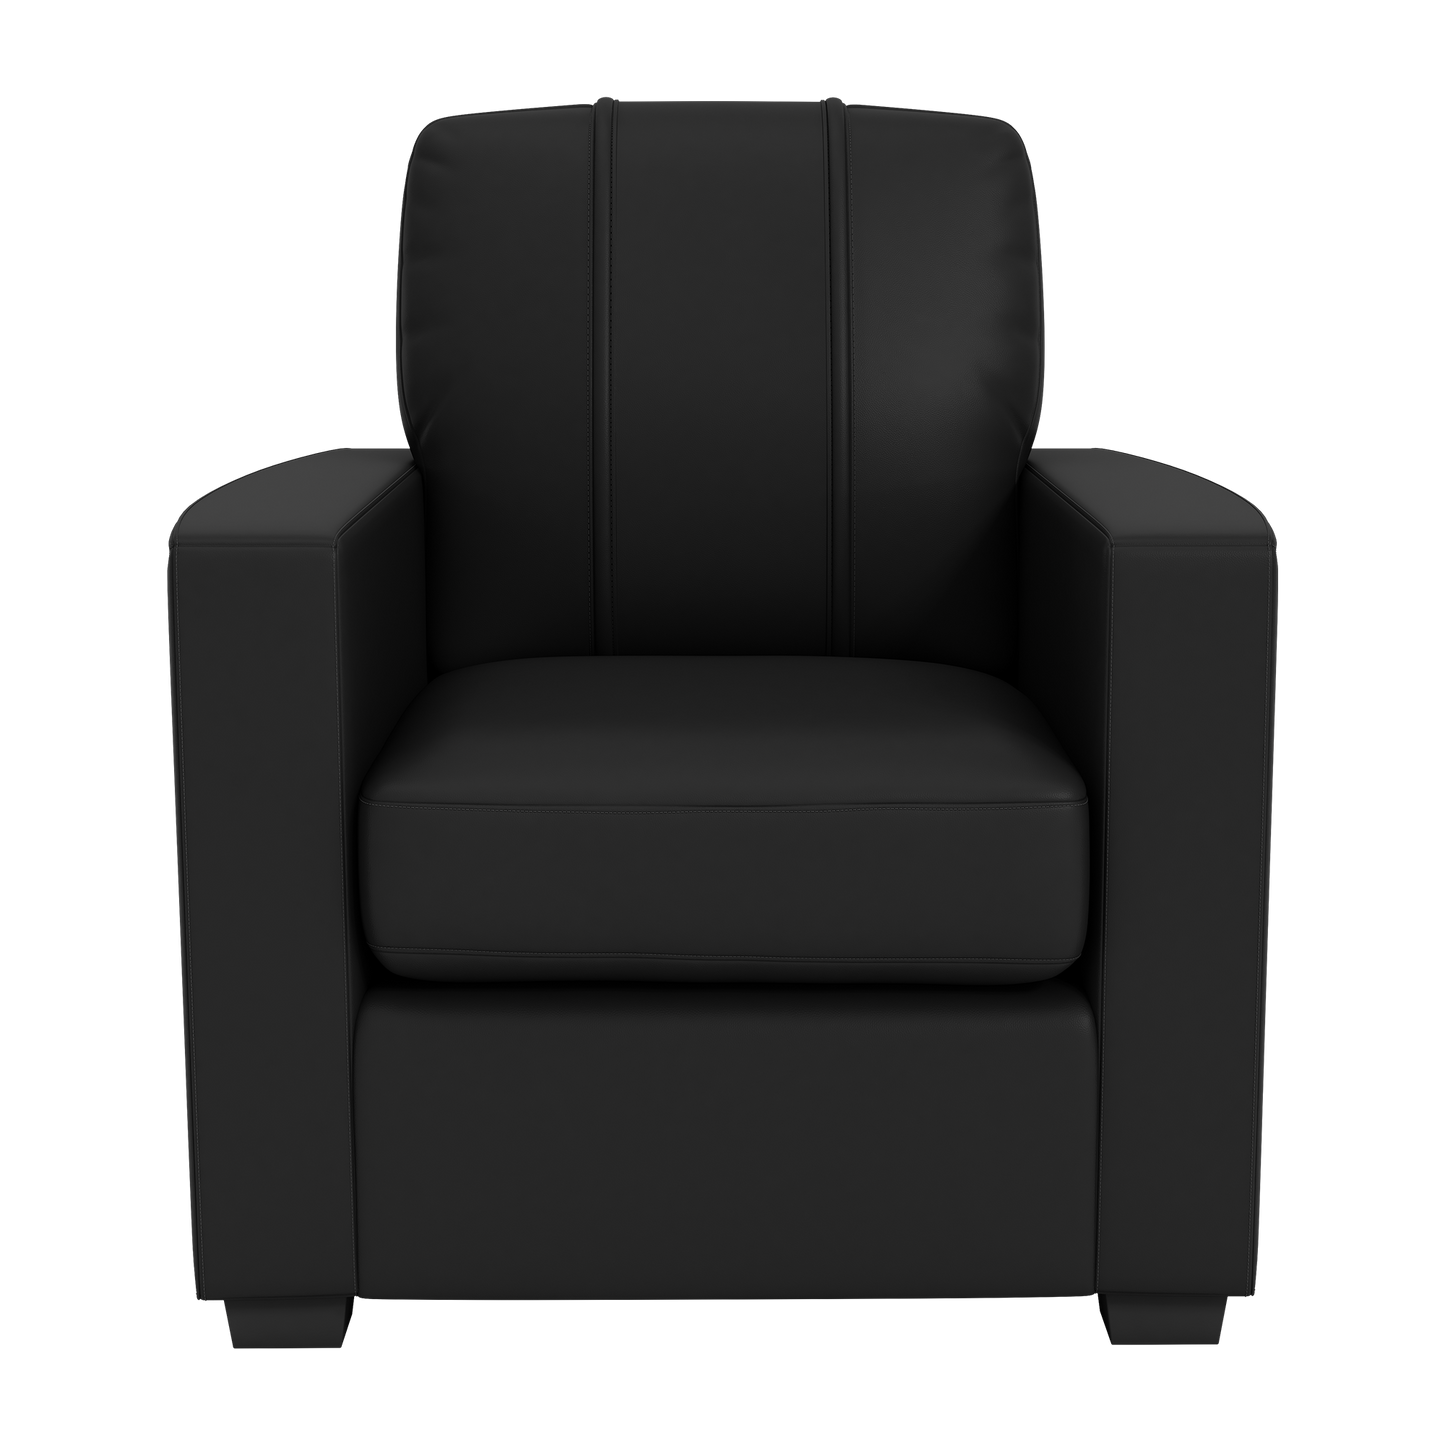 Silver Club Chair with Baltimore Orioles Bird Logo